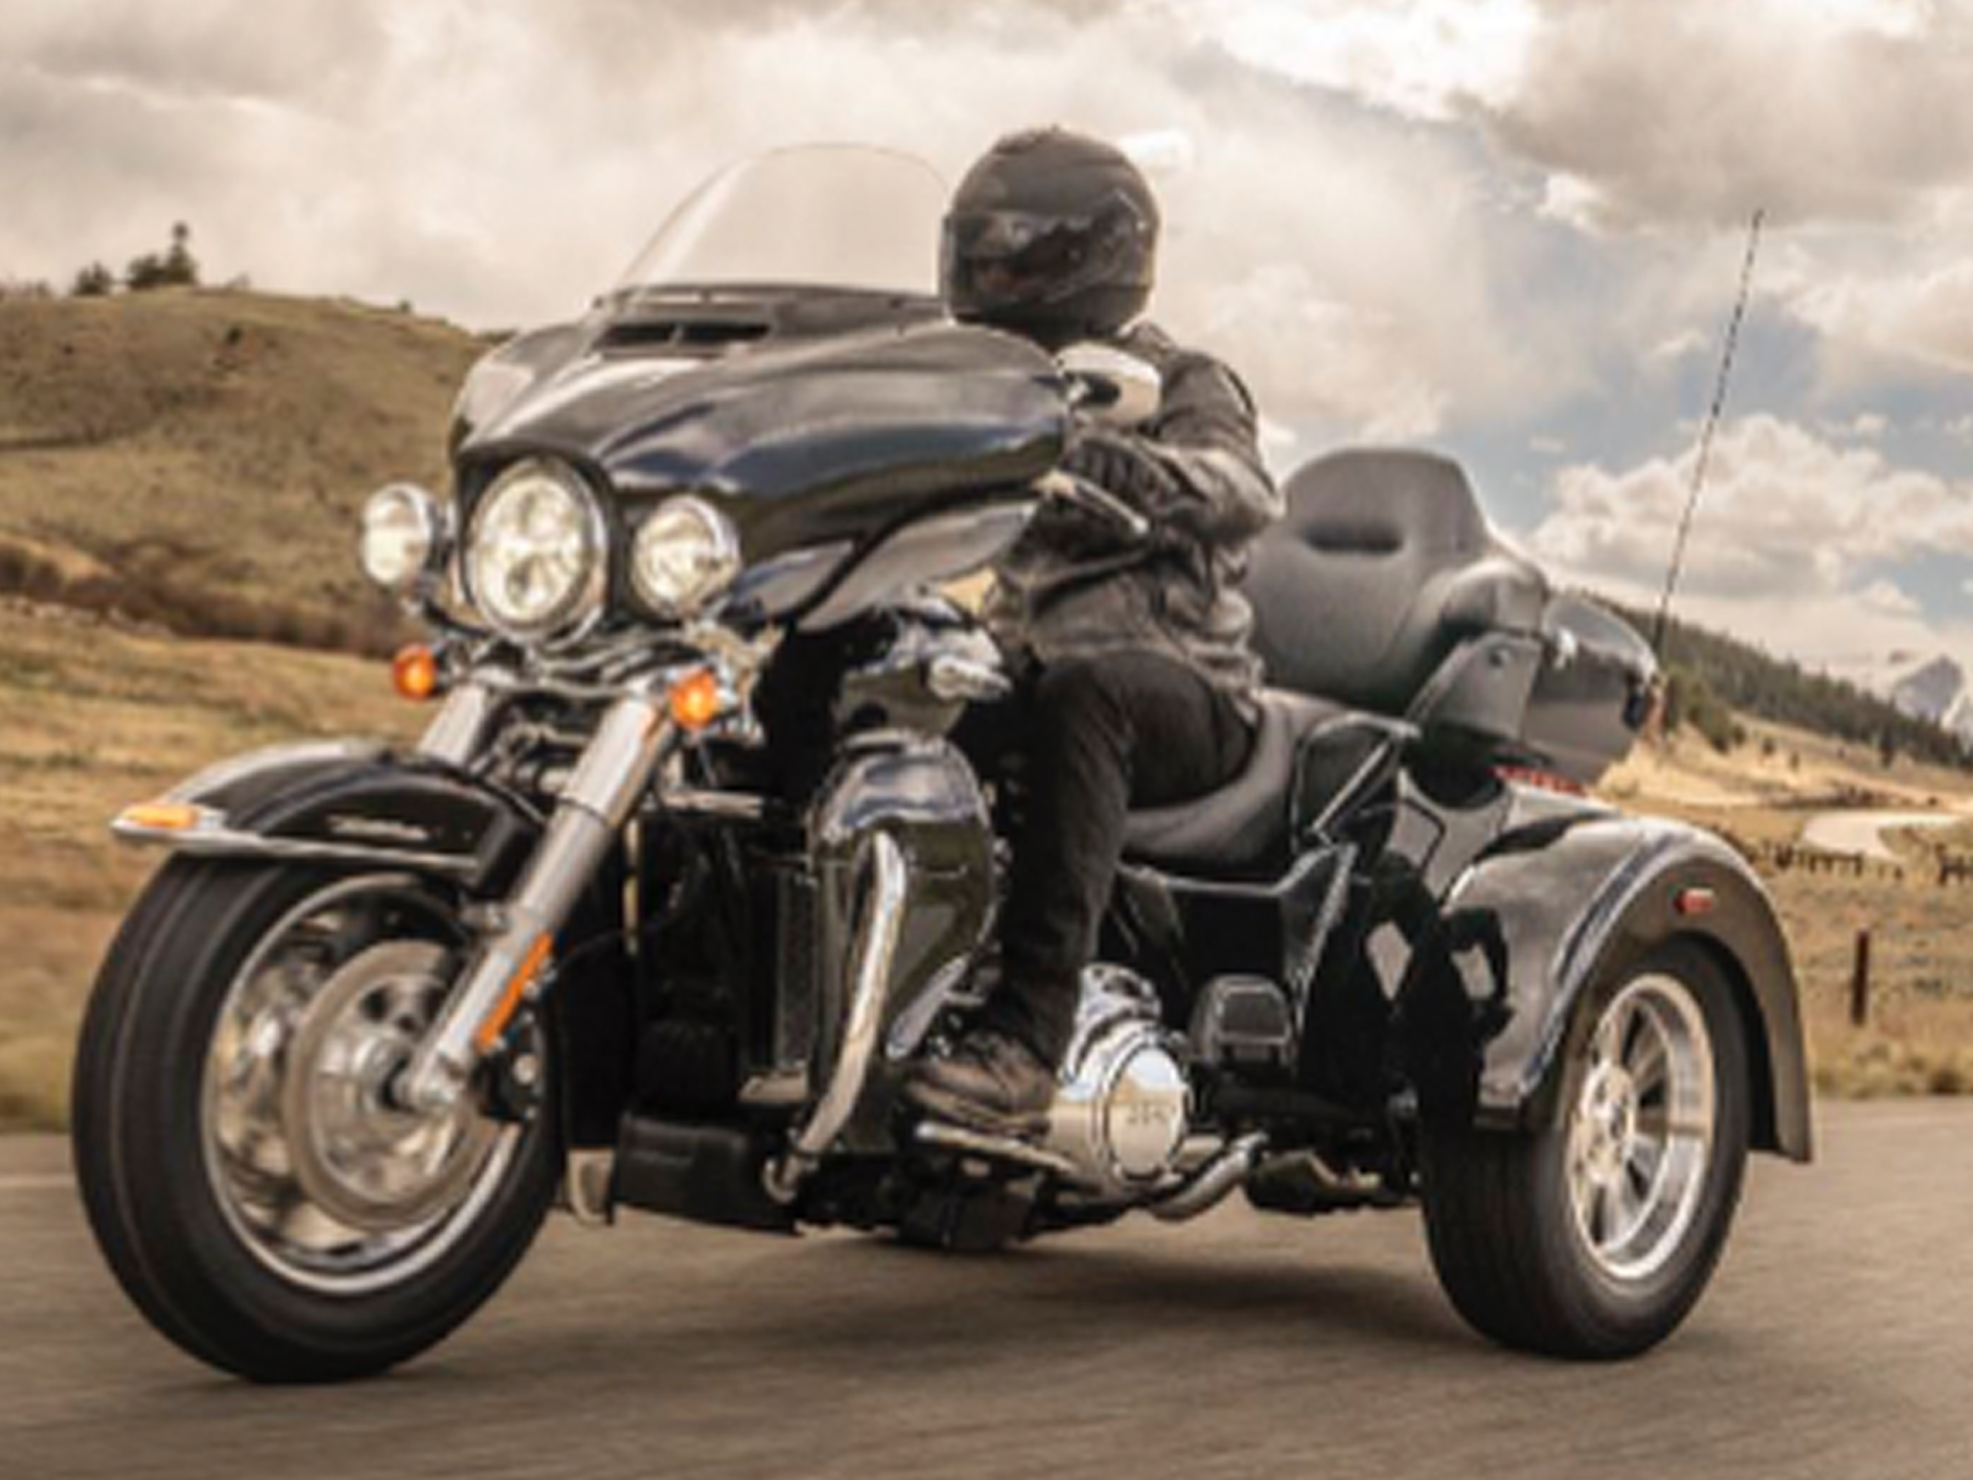  2019  Trike  Motorcycles 3 Wheel Motorcycles Harley  